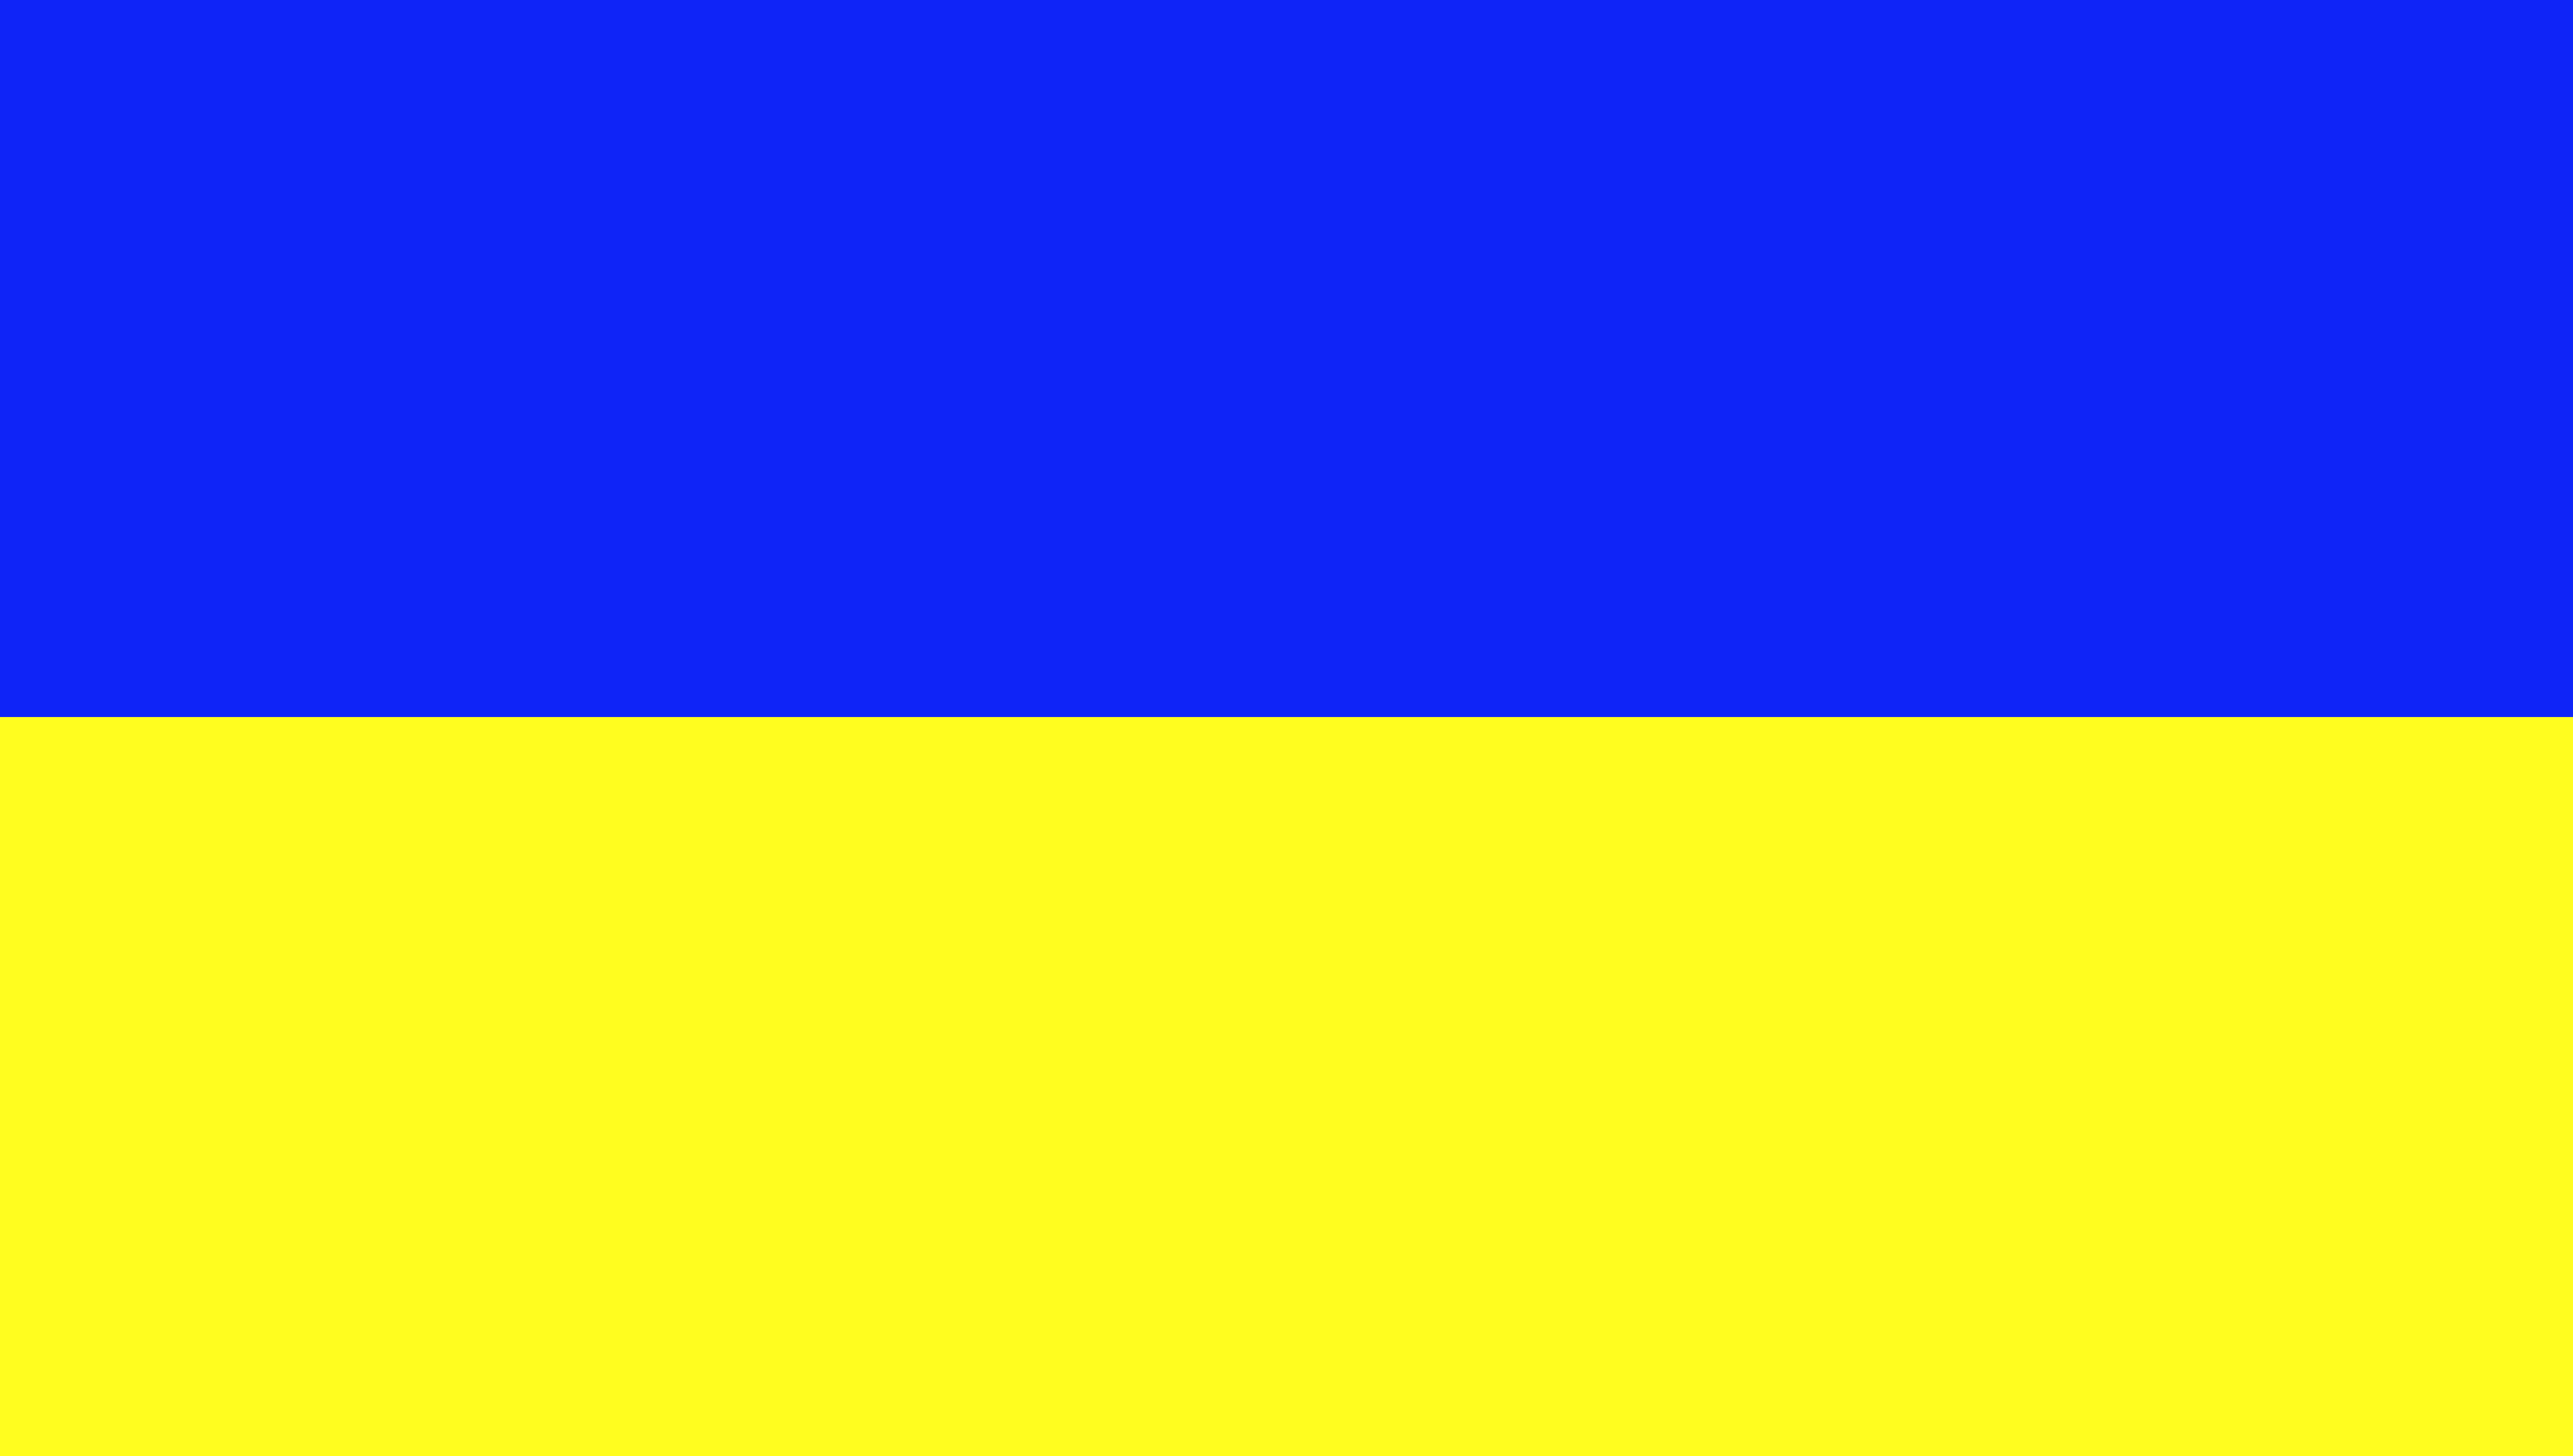 State flag of Ukraine